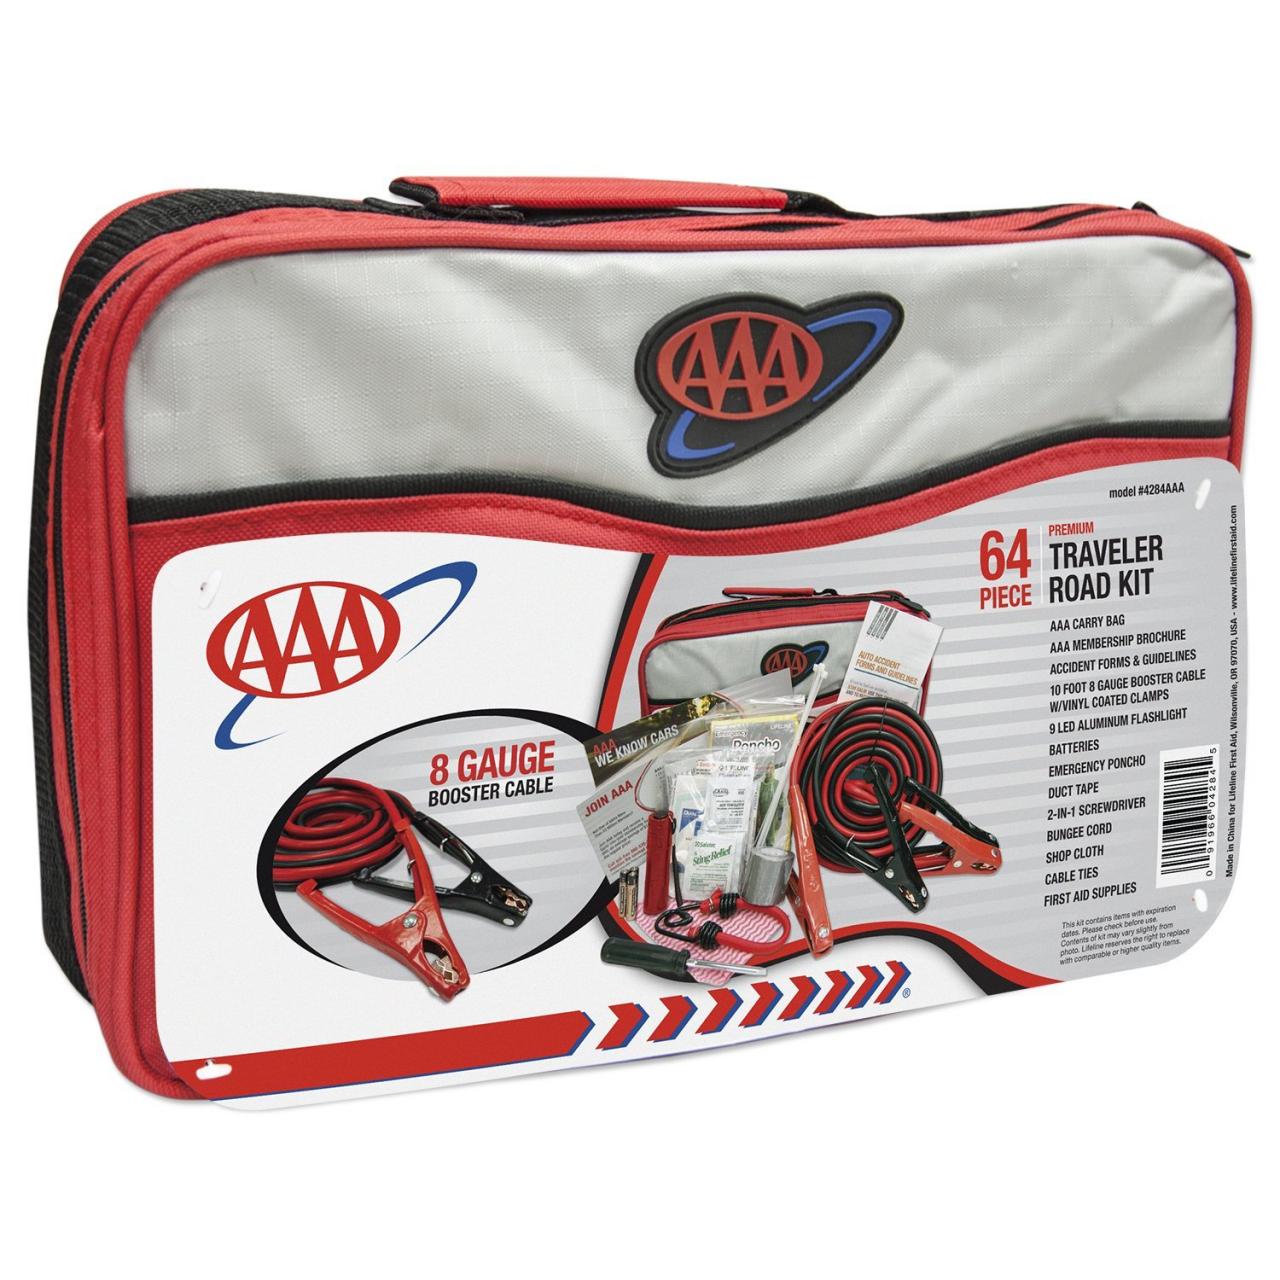 AAA 64 Piece Premium Traveler Road Kit+ – Pointer Safety Kit